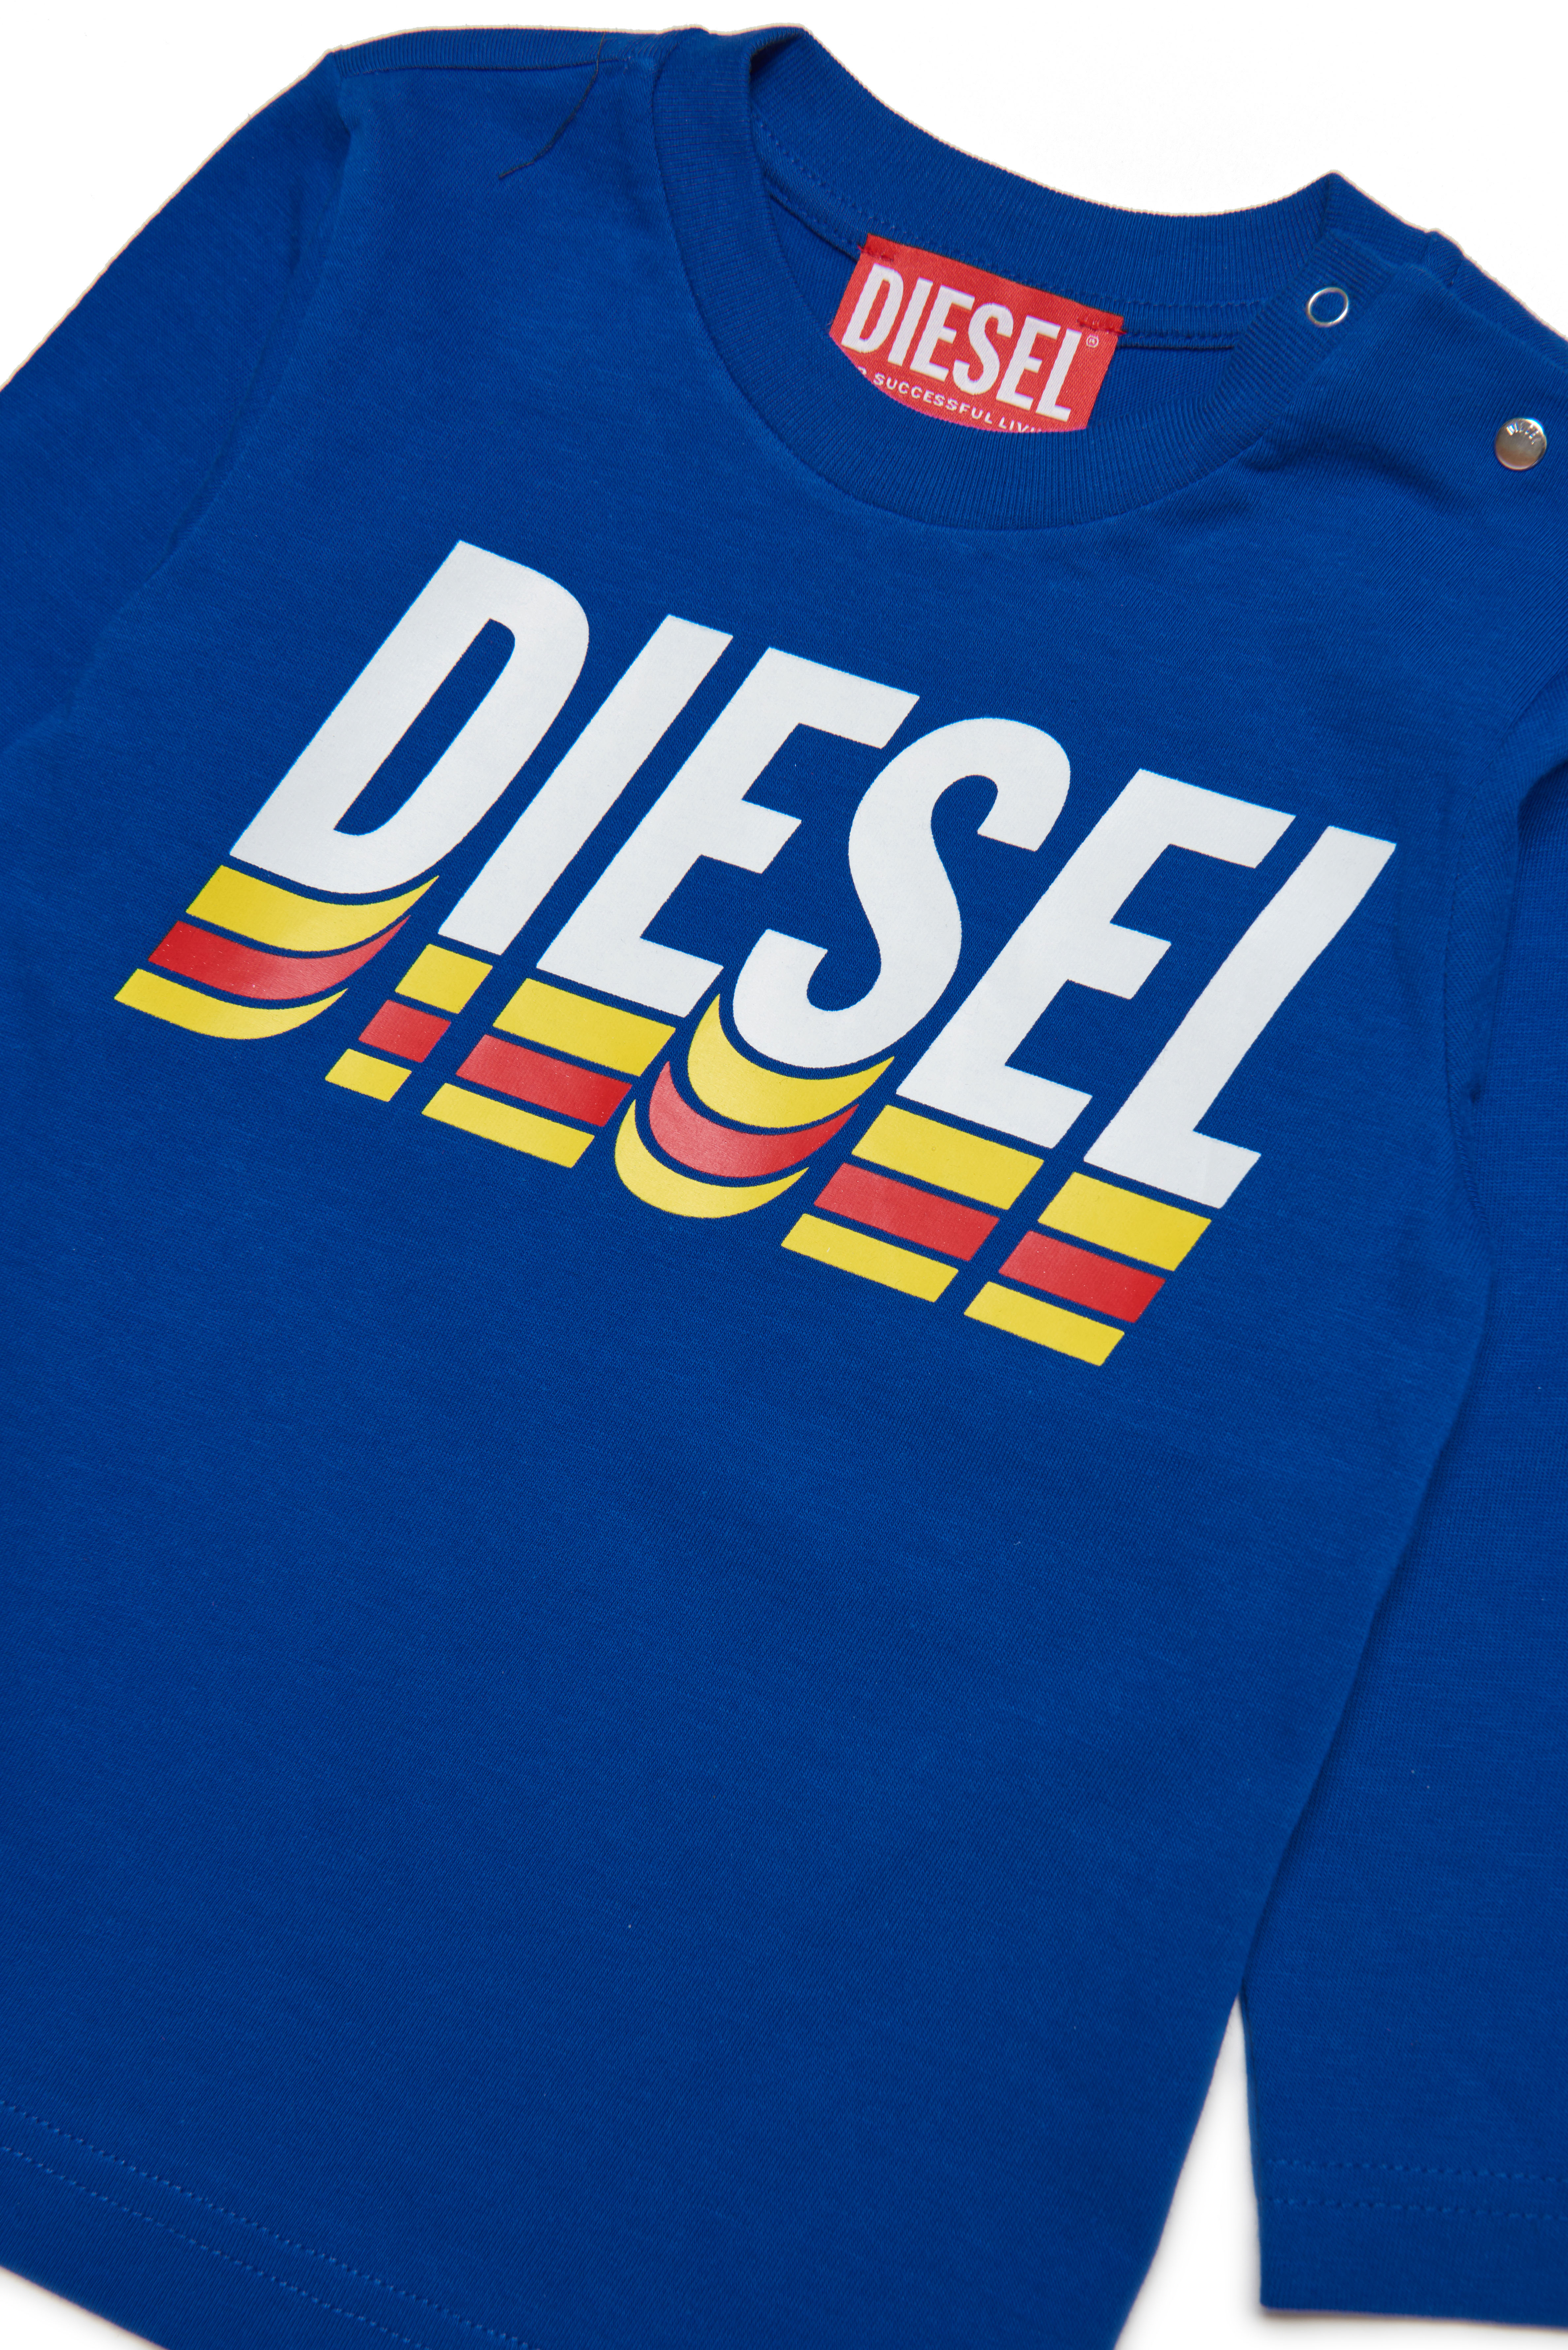 Diesel - TVASELSB, Blu - Image 3